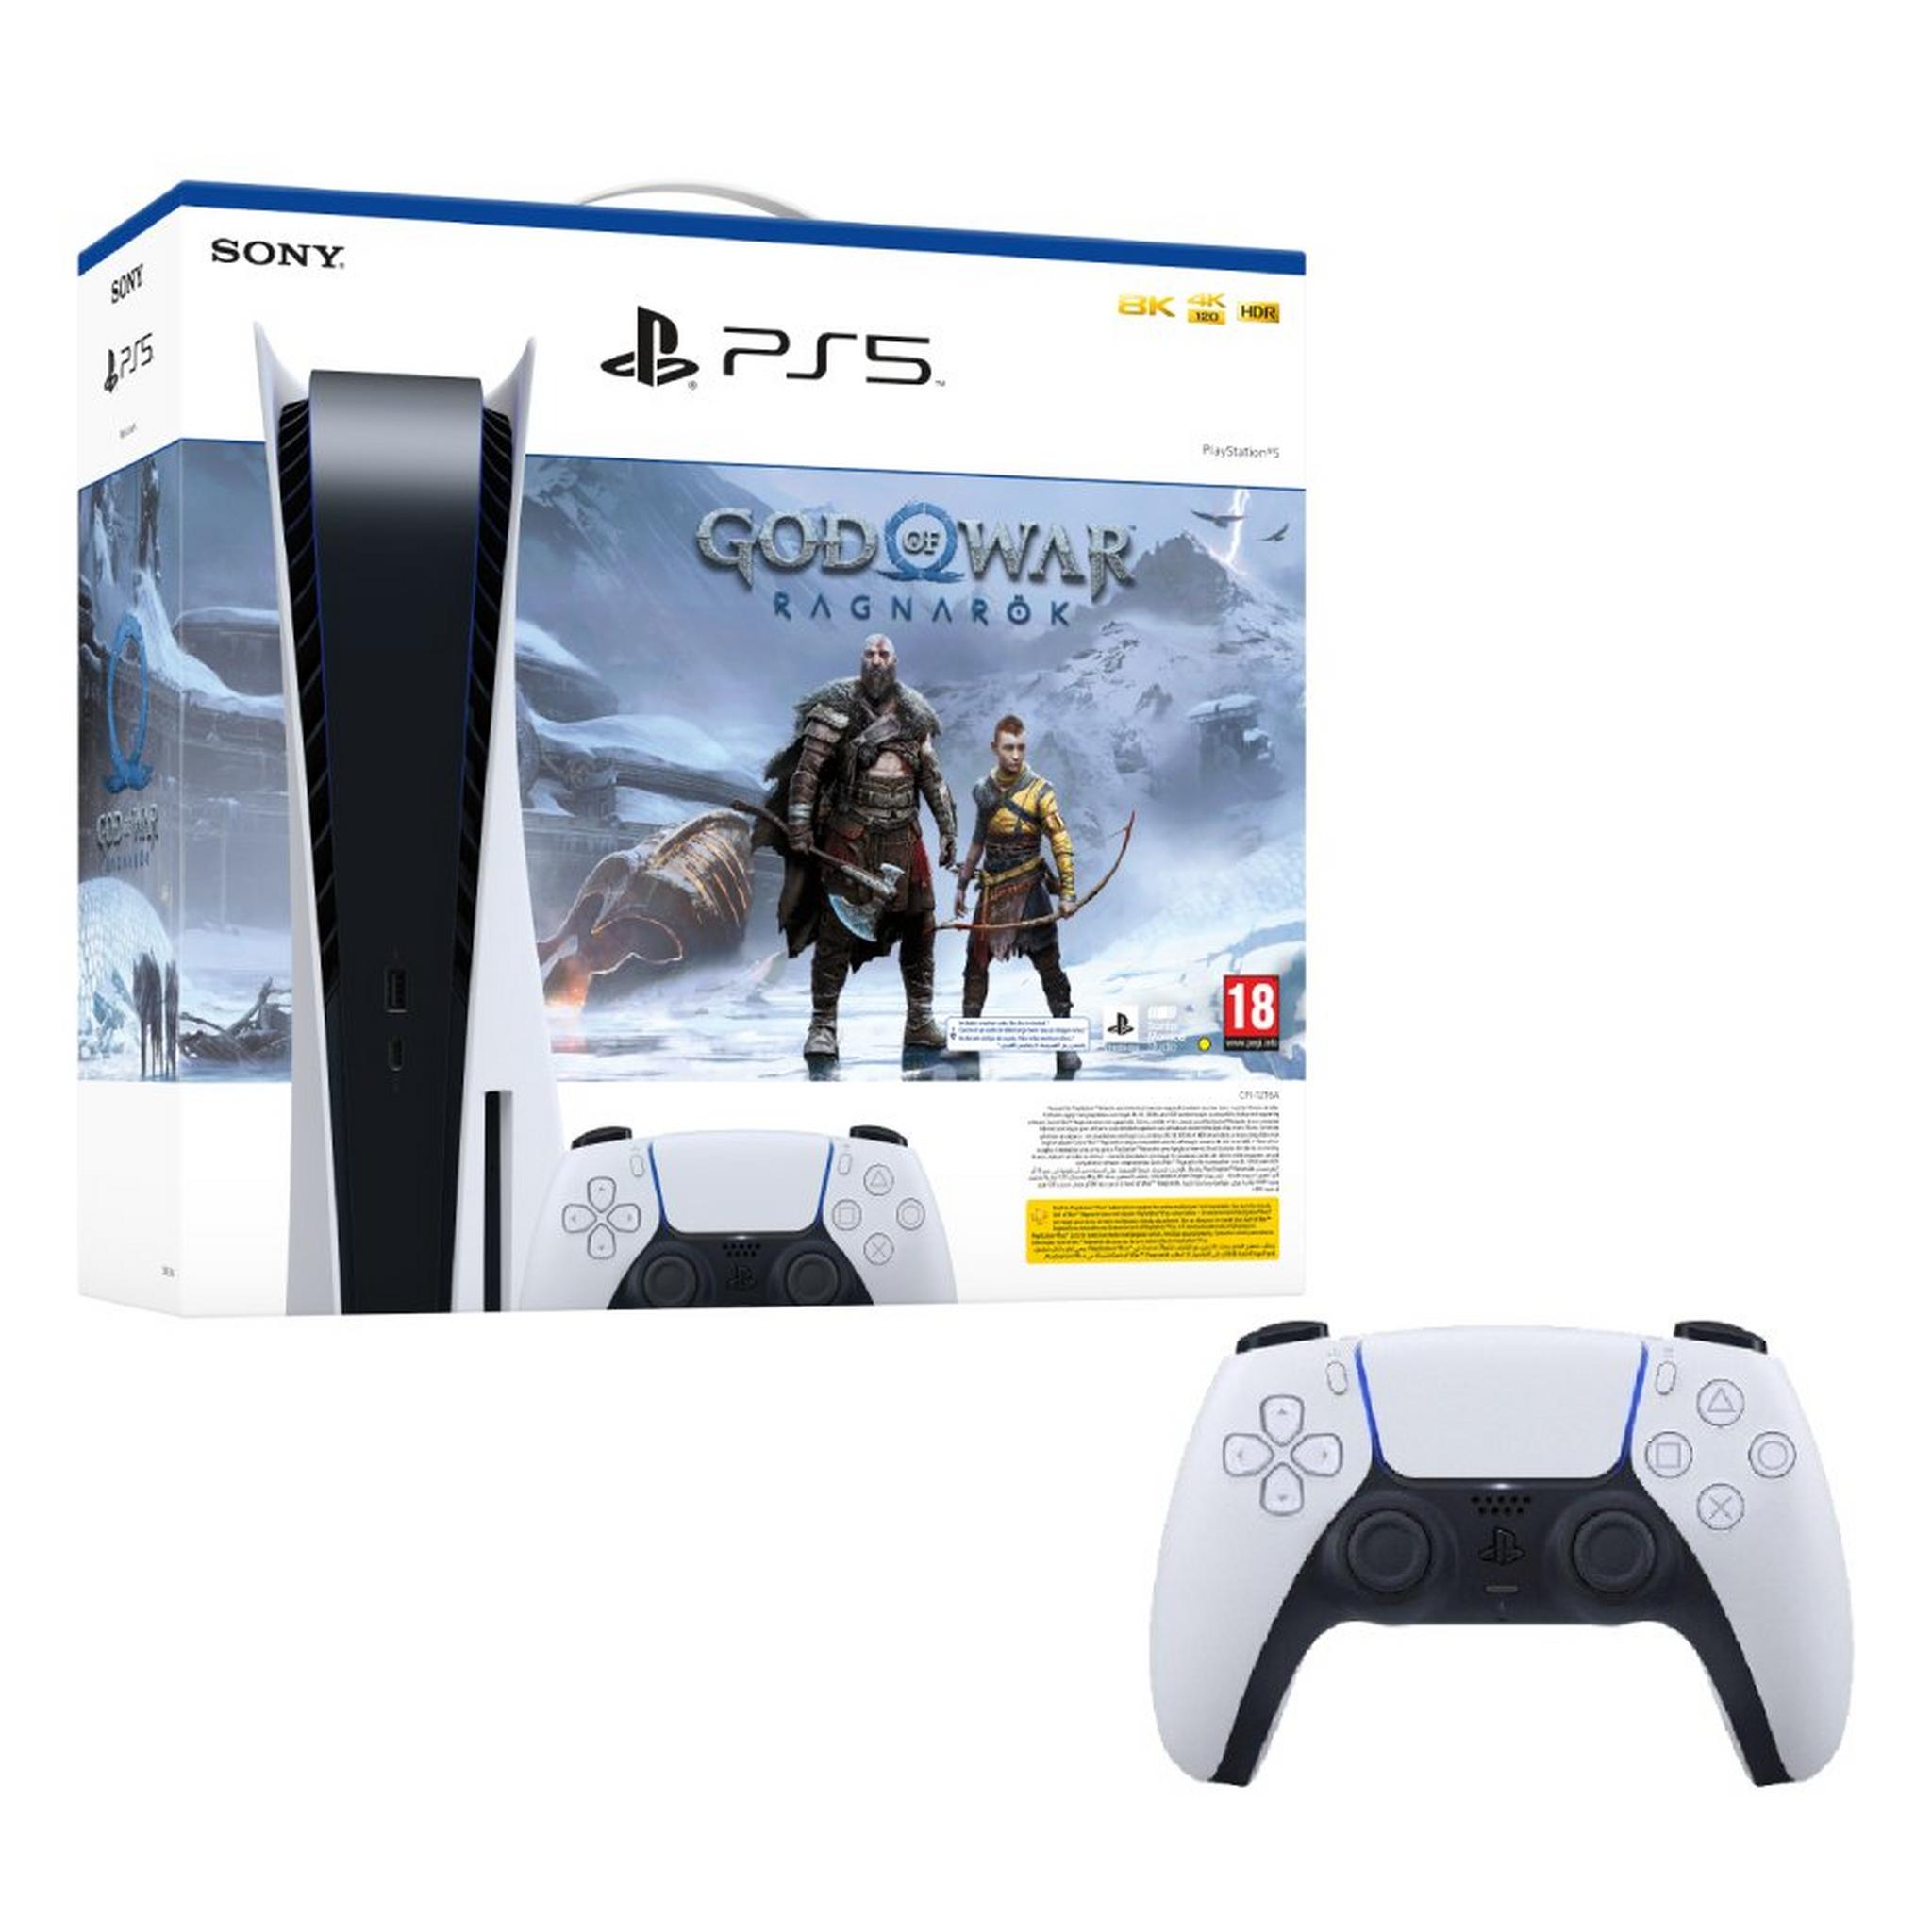 PlayStation 5 Disc Console + God of War: Ragnarok Voucher + Sony PS5 DualSense Wireless Controller